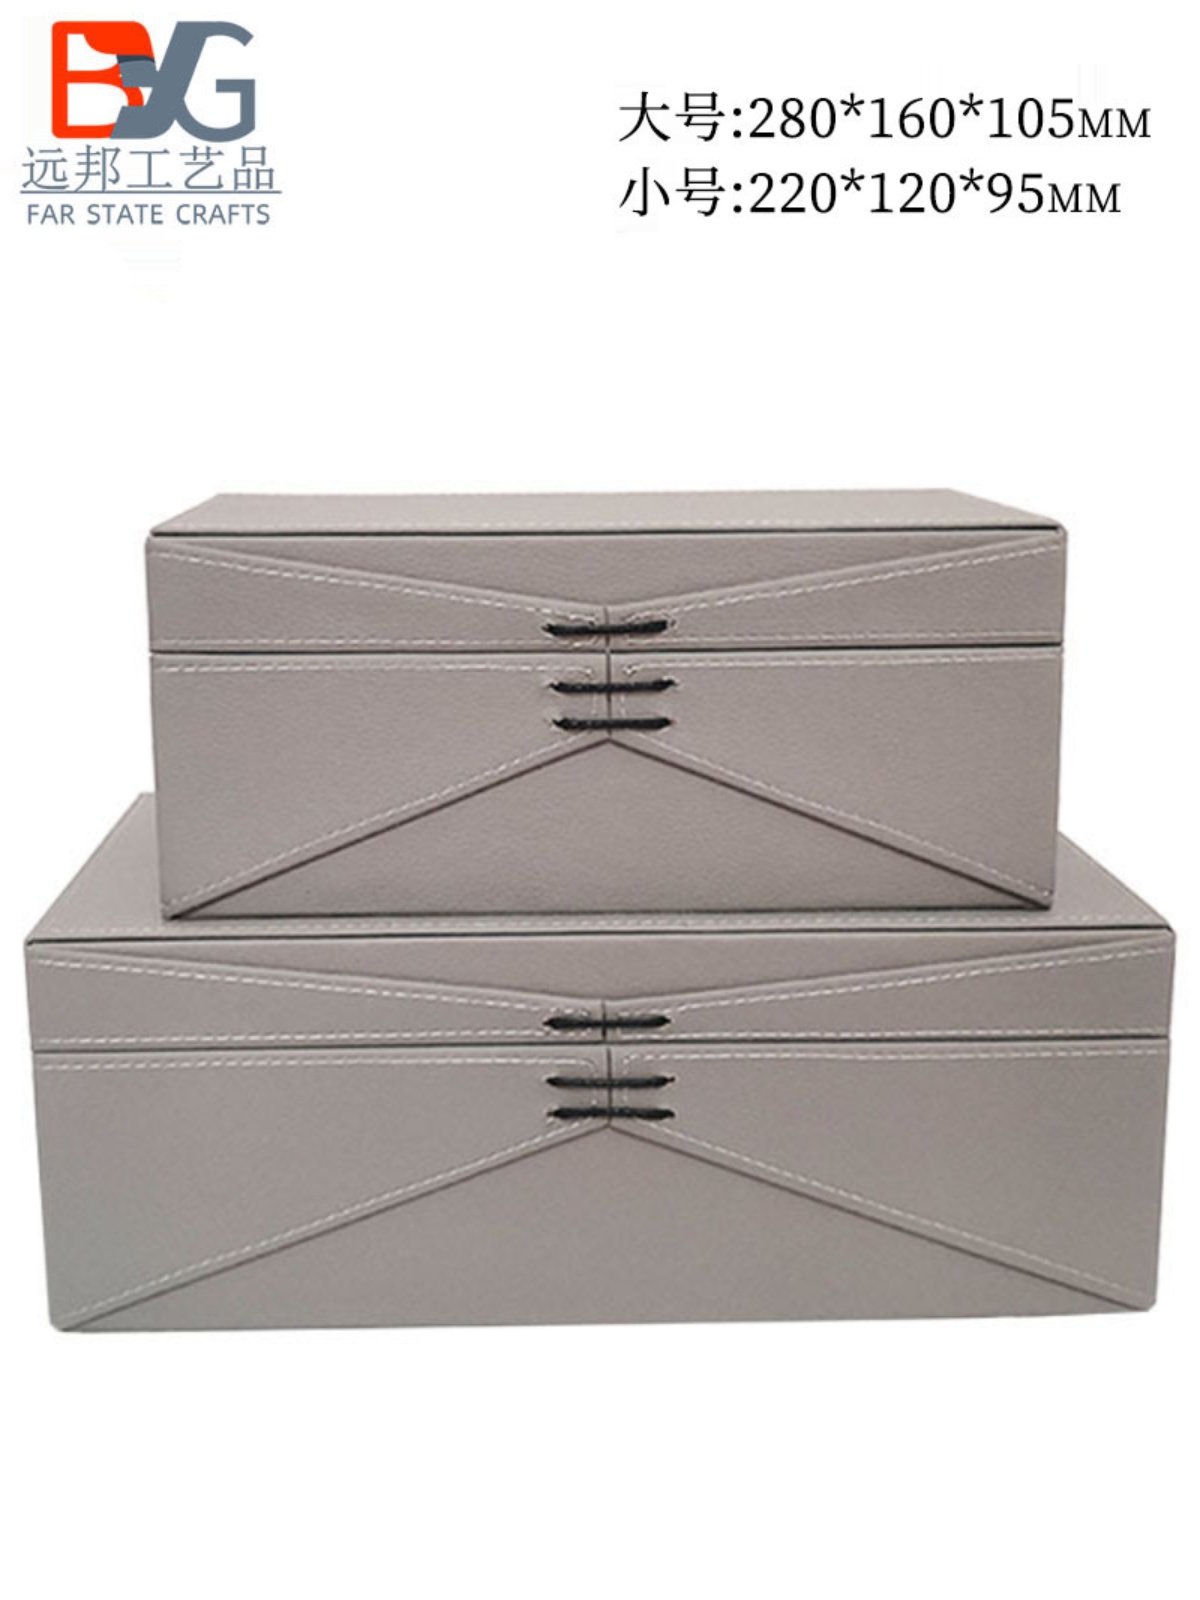 衣柜收纳盒皮质样板房间家用装饰道具简约便捷新中式小储物盒摆件